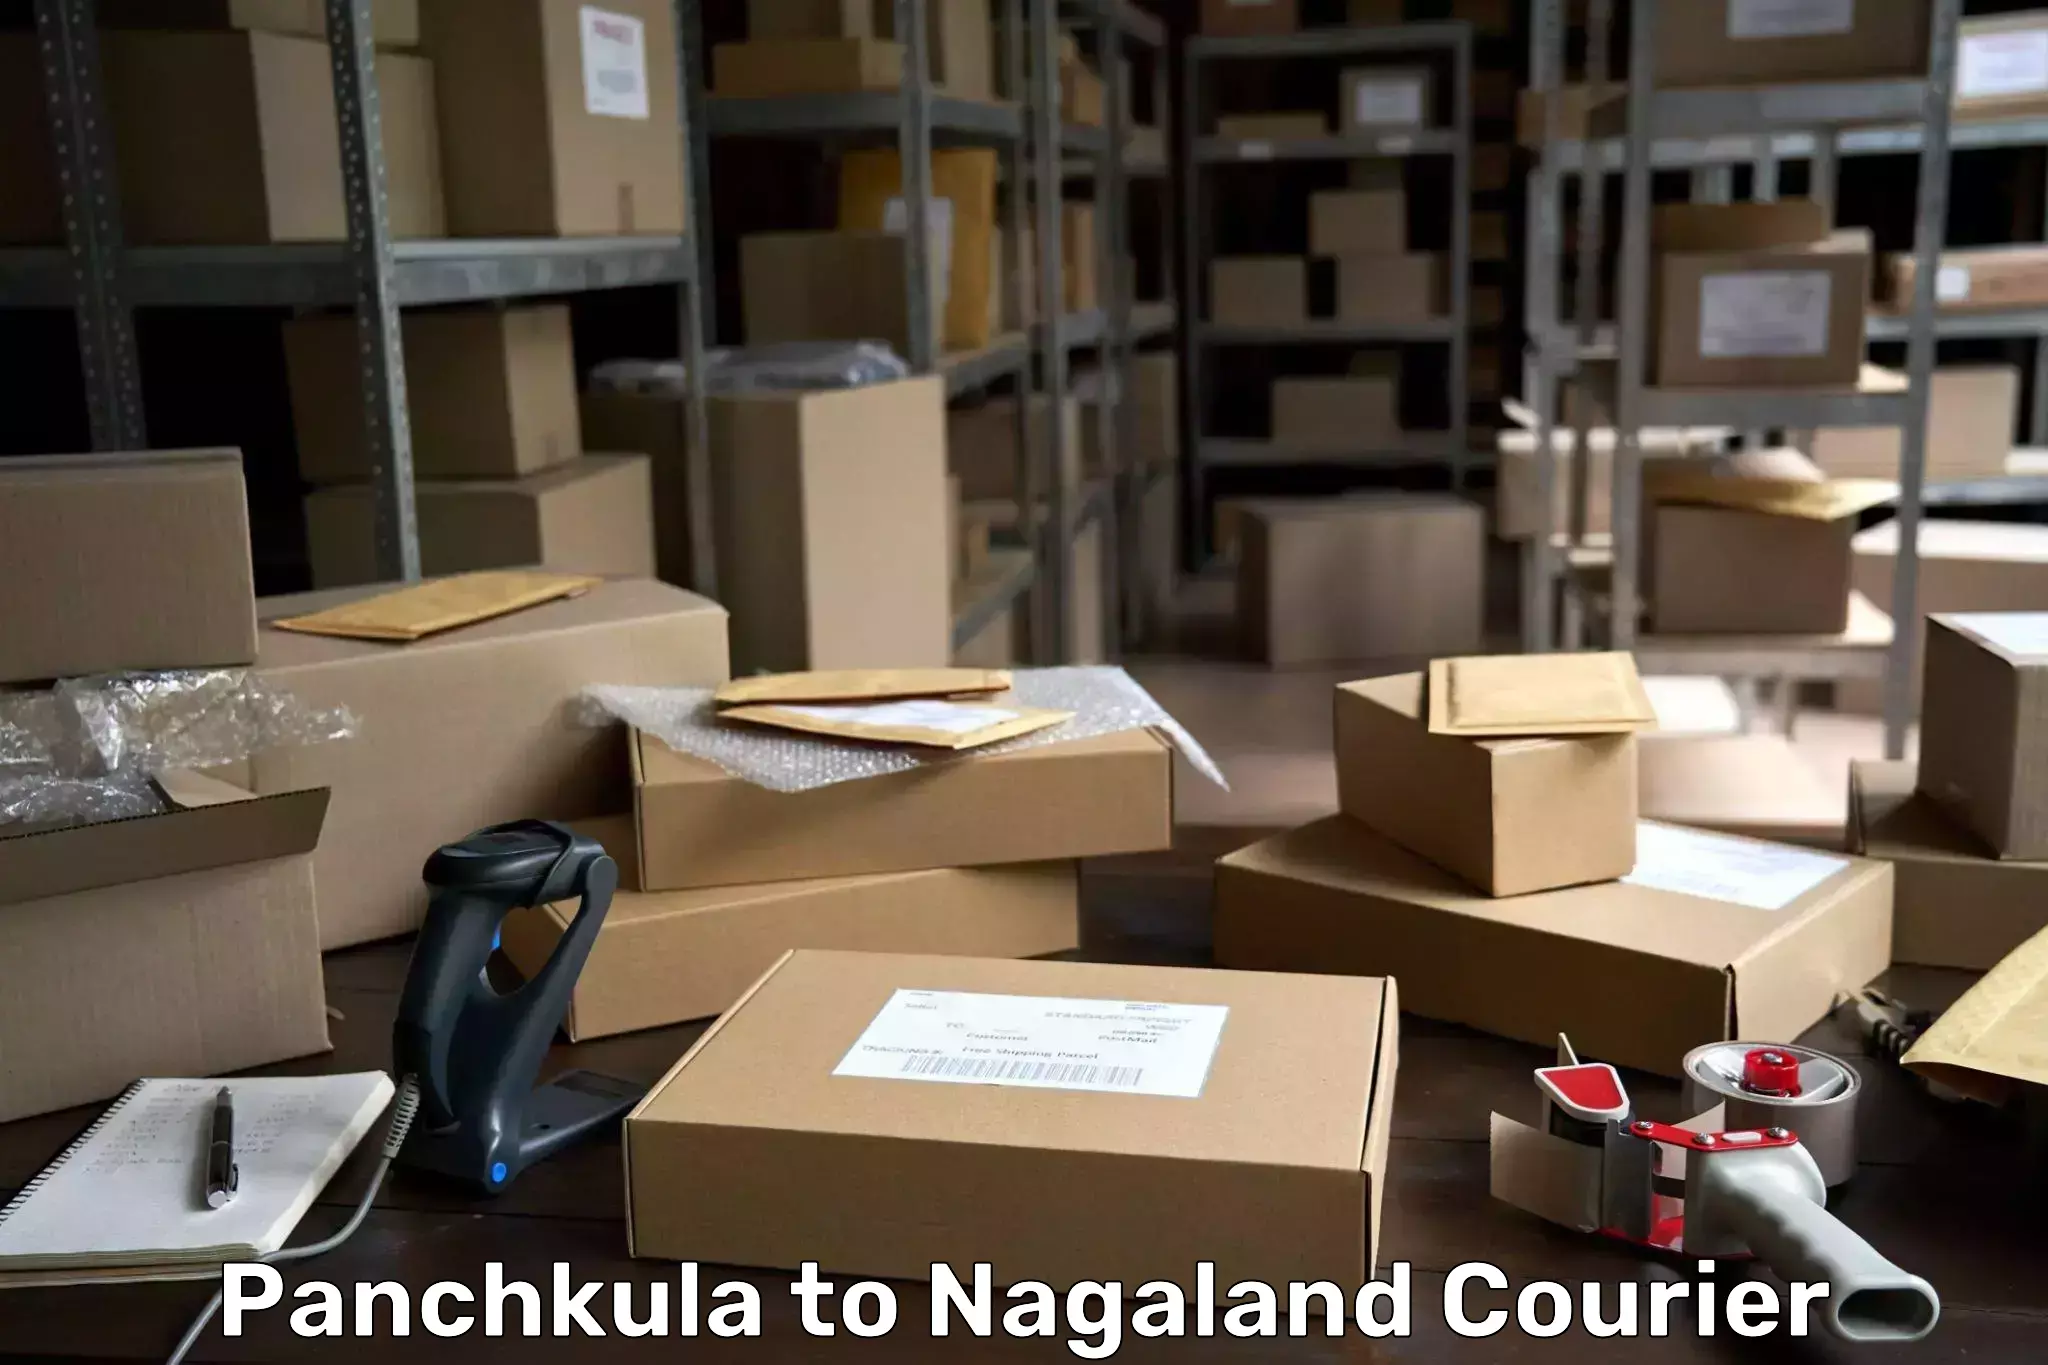 Express delivery capabilities Panchkula to NIT Nagaland